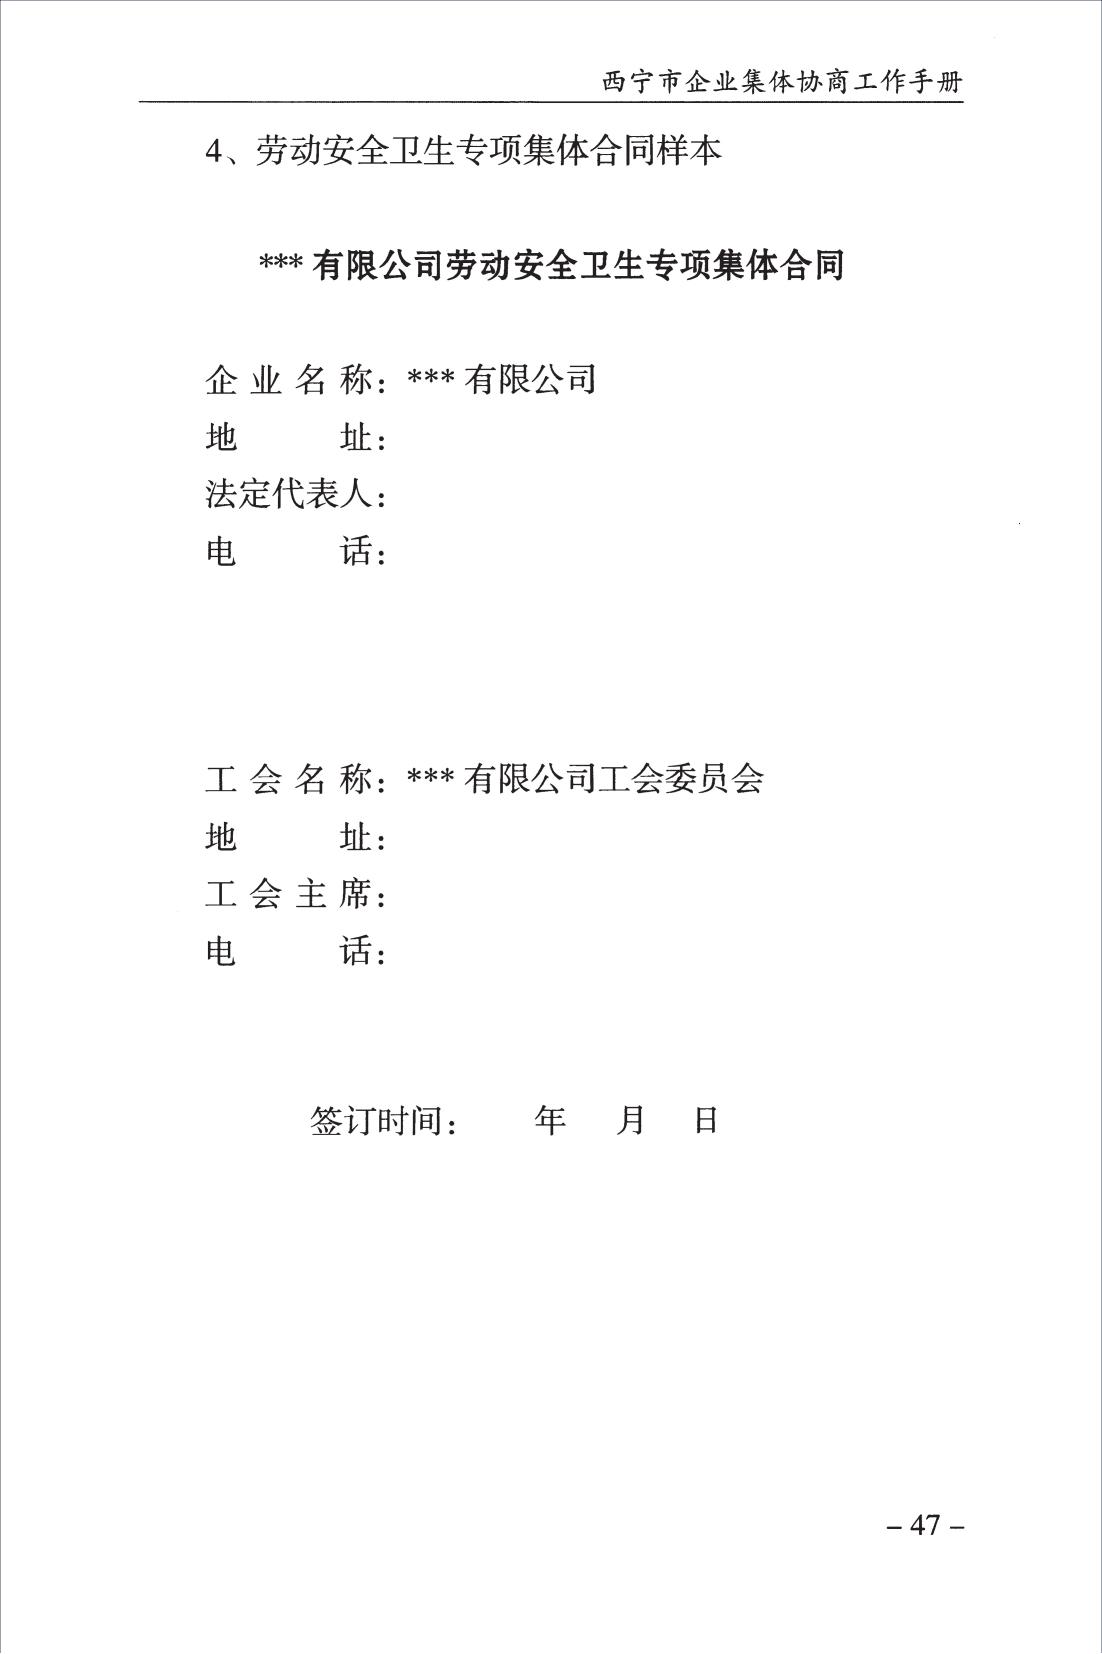 西宁市企业集体协商工作手册_49.jpg